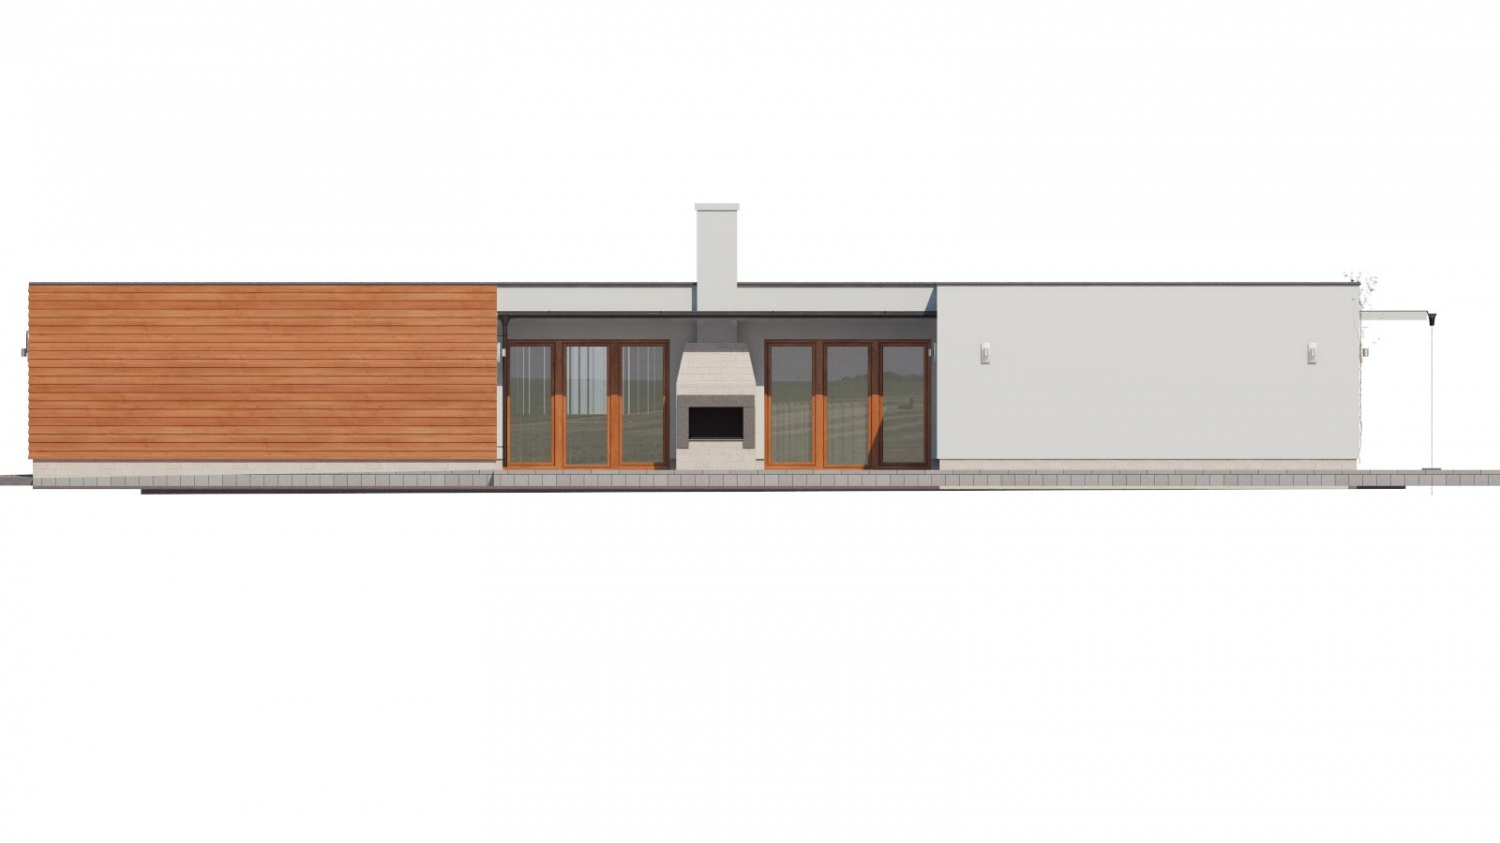 Pohľad 2. - Moderní atriový rodinný dům ve tvaru U s garáží, plochou střechou. Vhodný i na úzký pozemek.